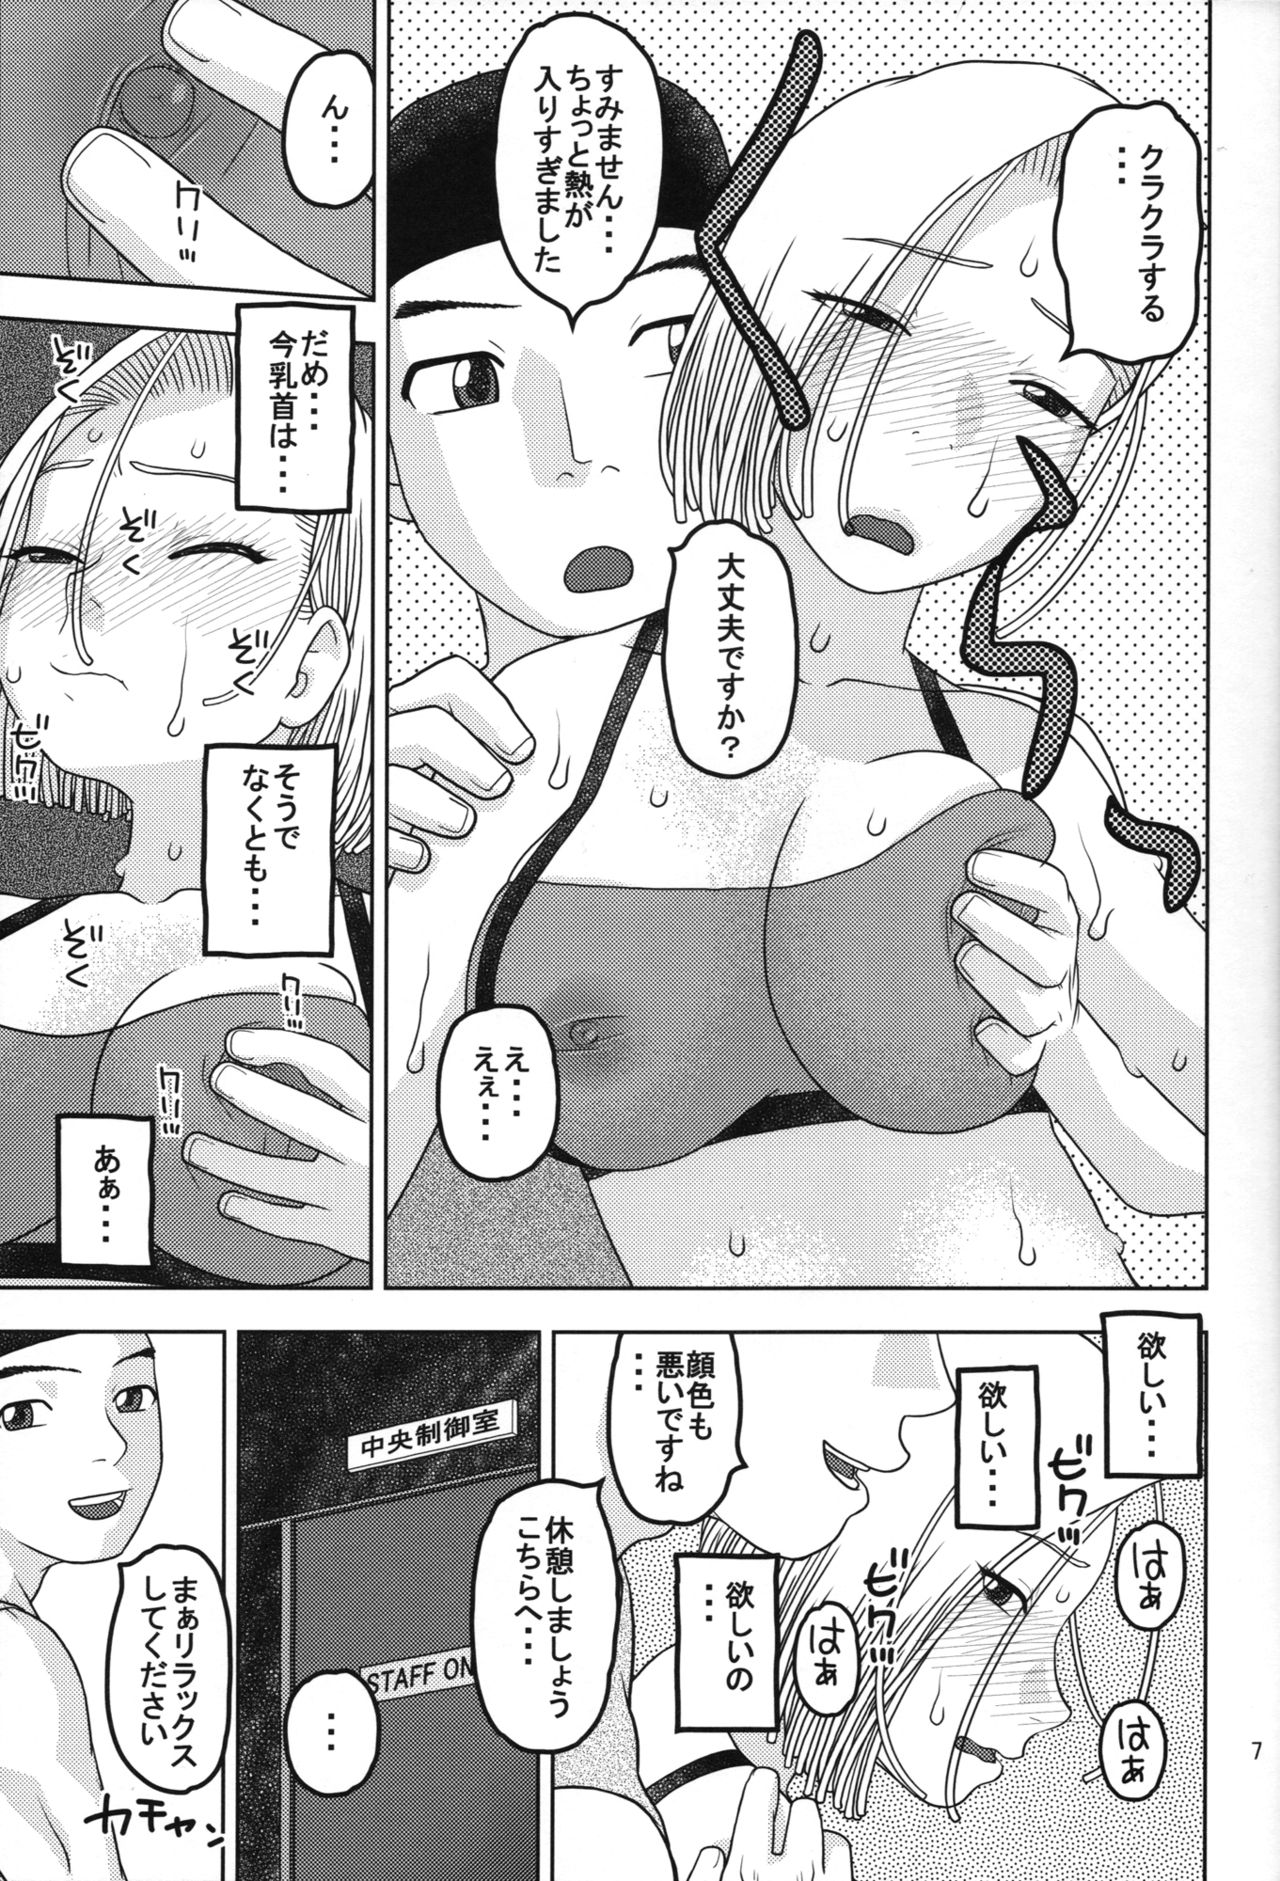 (COMIC1☆11) [スタジオ・ワラビー (にいるまけんじ)] 18号とスポーツジムで性交 (ドラゴンボールZ)